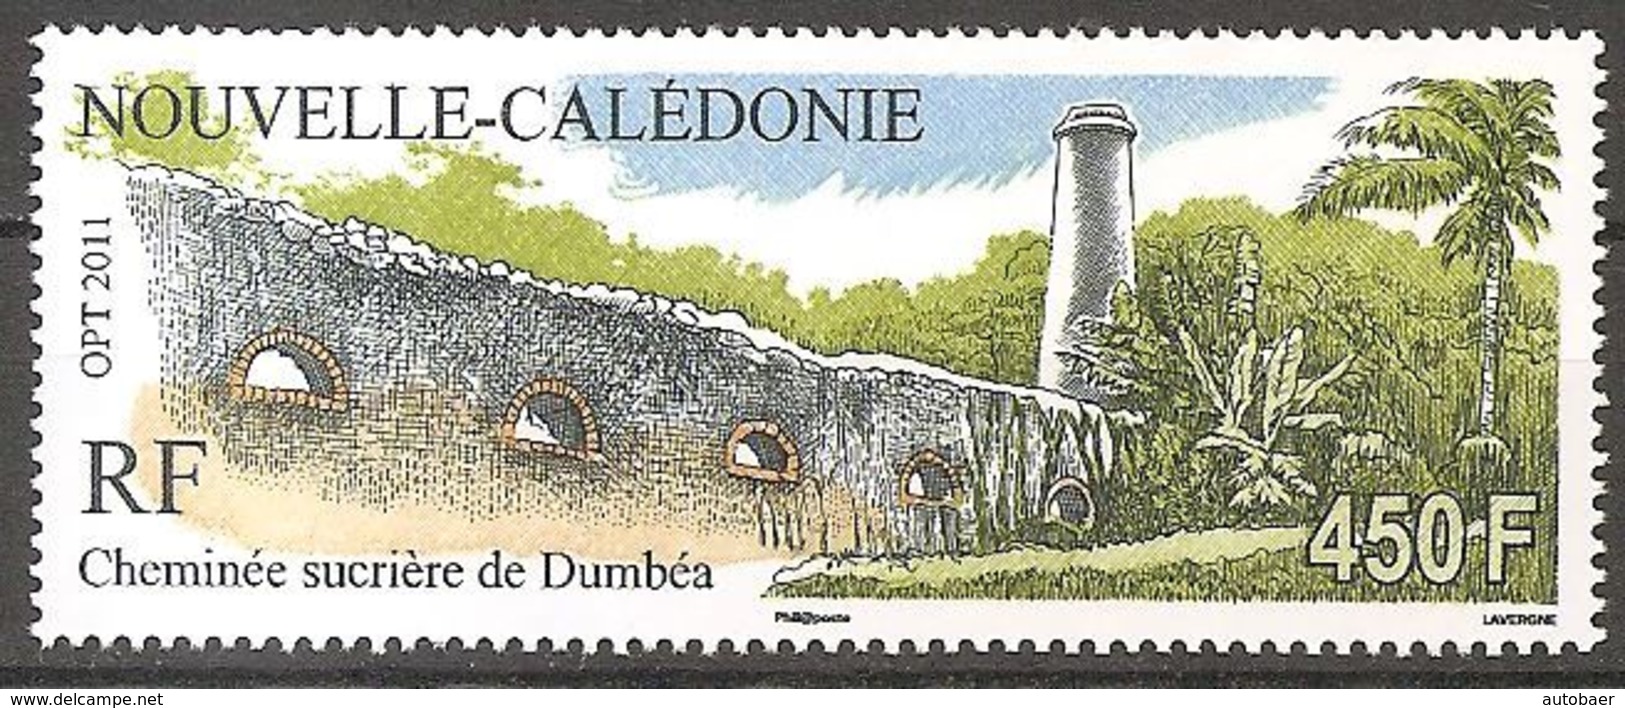 Neukaledonien Nouvelle Caledonie 2011 Cheminee Sucriere Dumbea Zuckerraffinerie Nimba  Michel No. 1574 MNH Postfr. Neuf - Unused Stamps